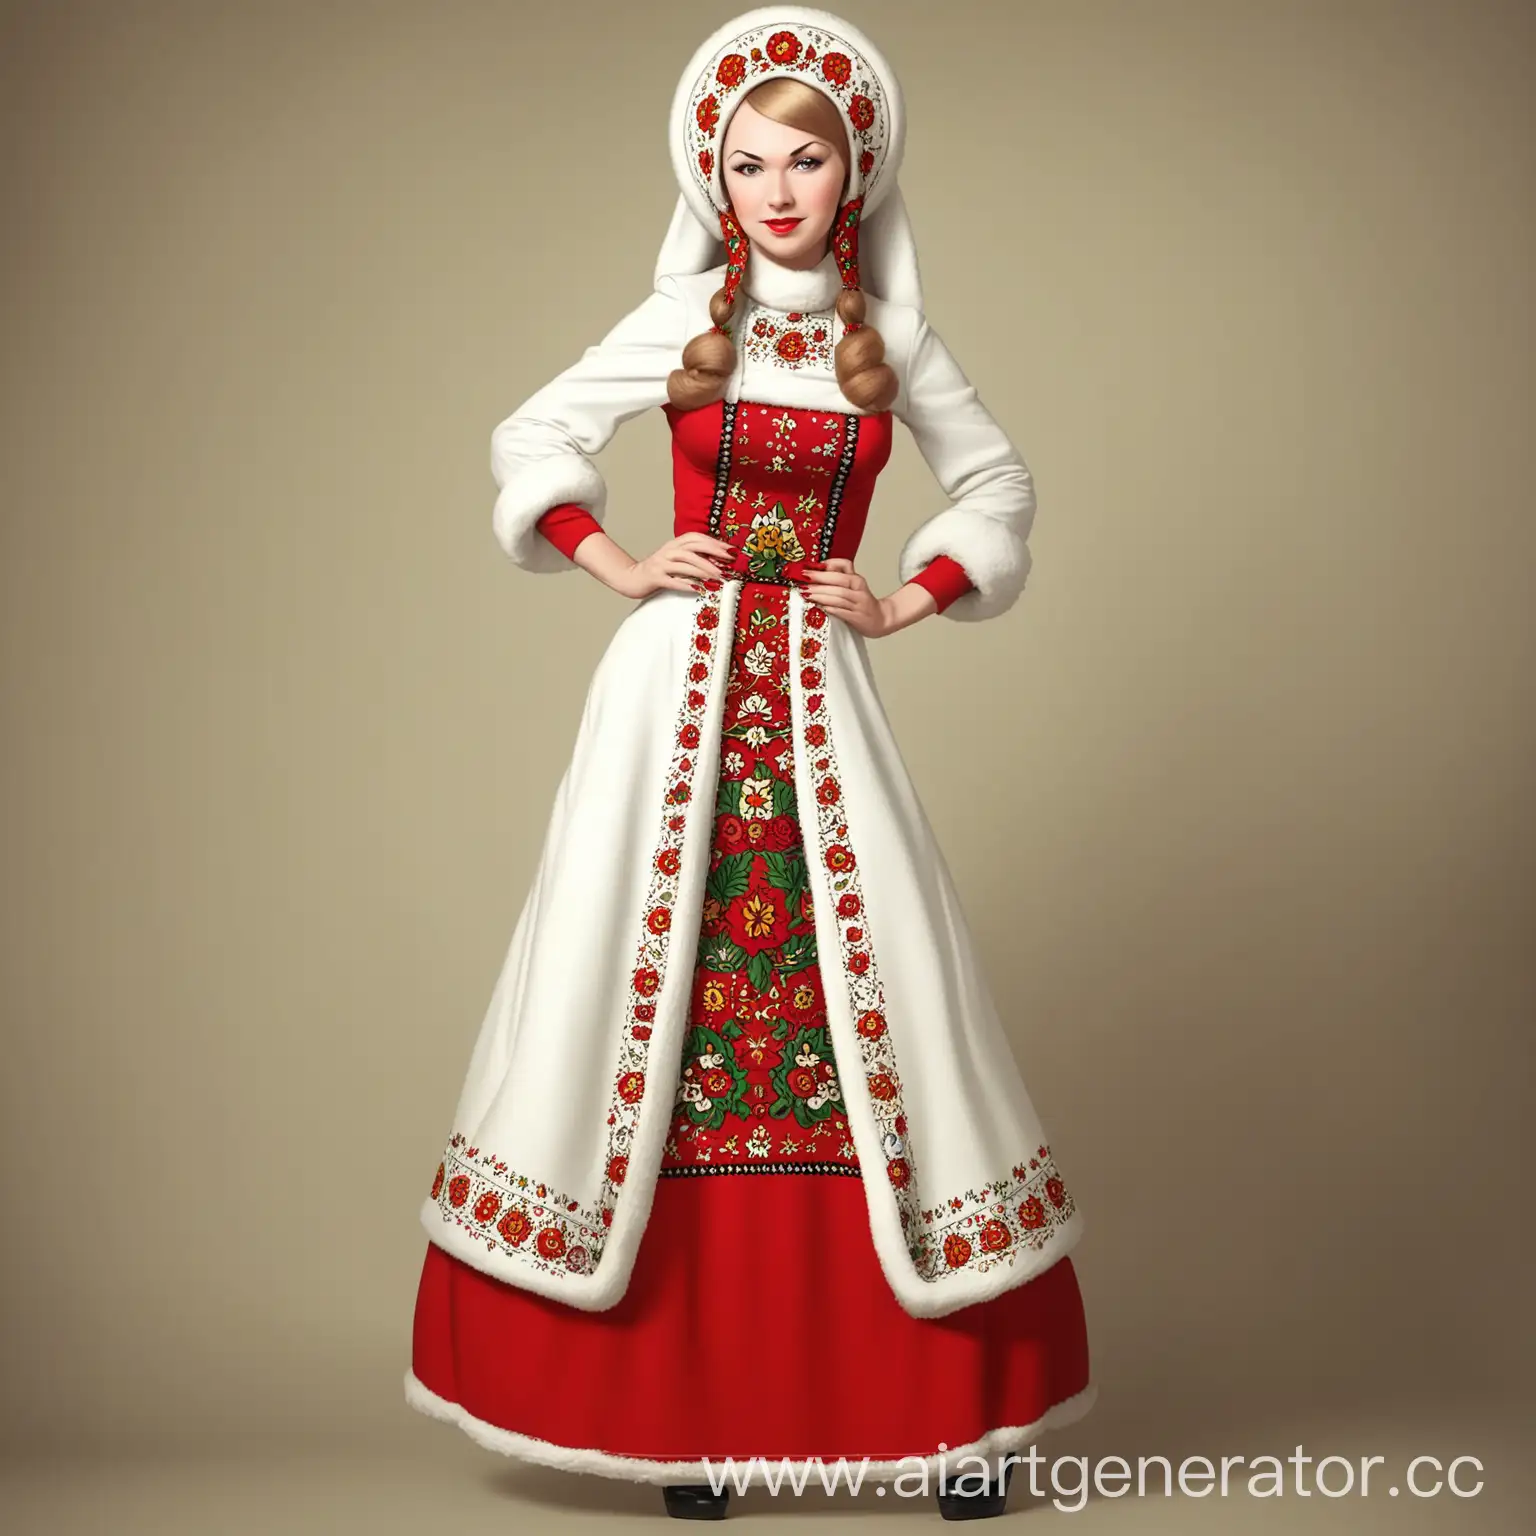 Русская женщина в кокошнике в полный рост в стиле пин-ап. Сладкония